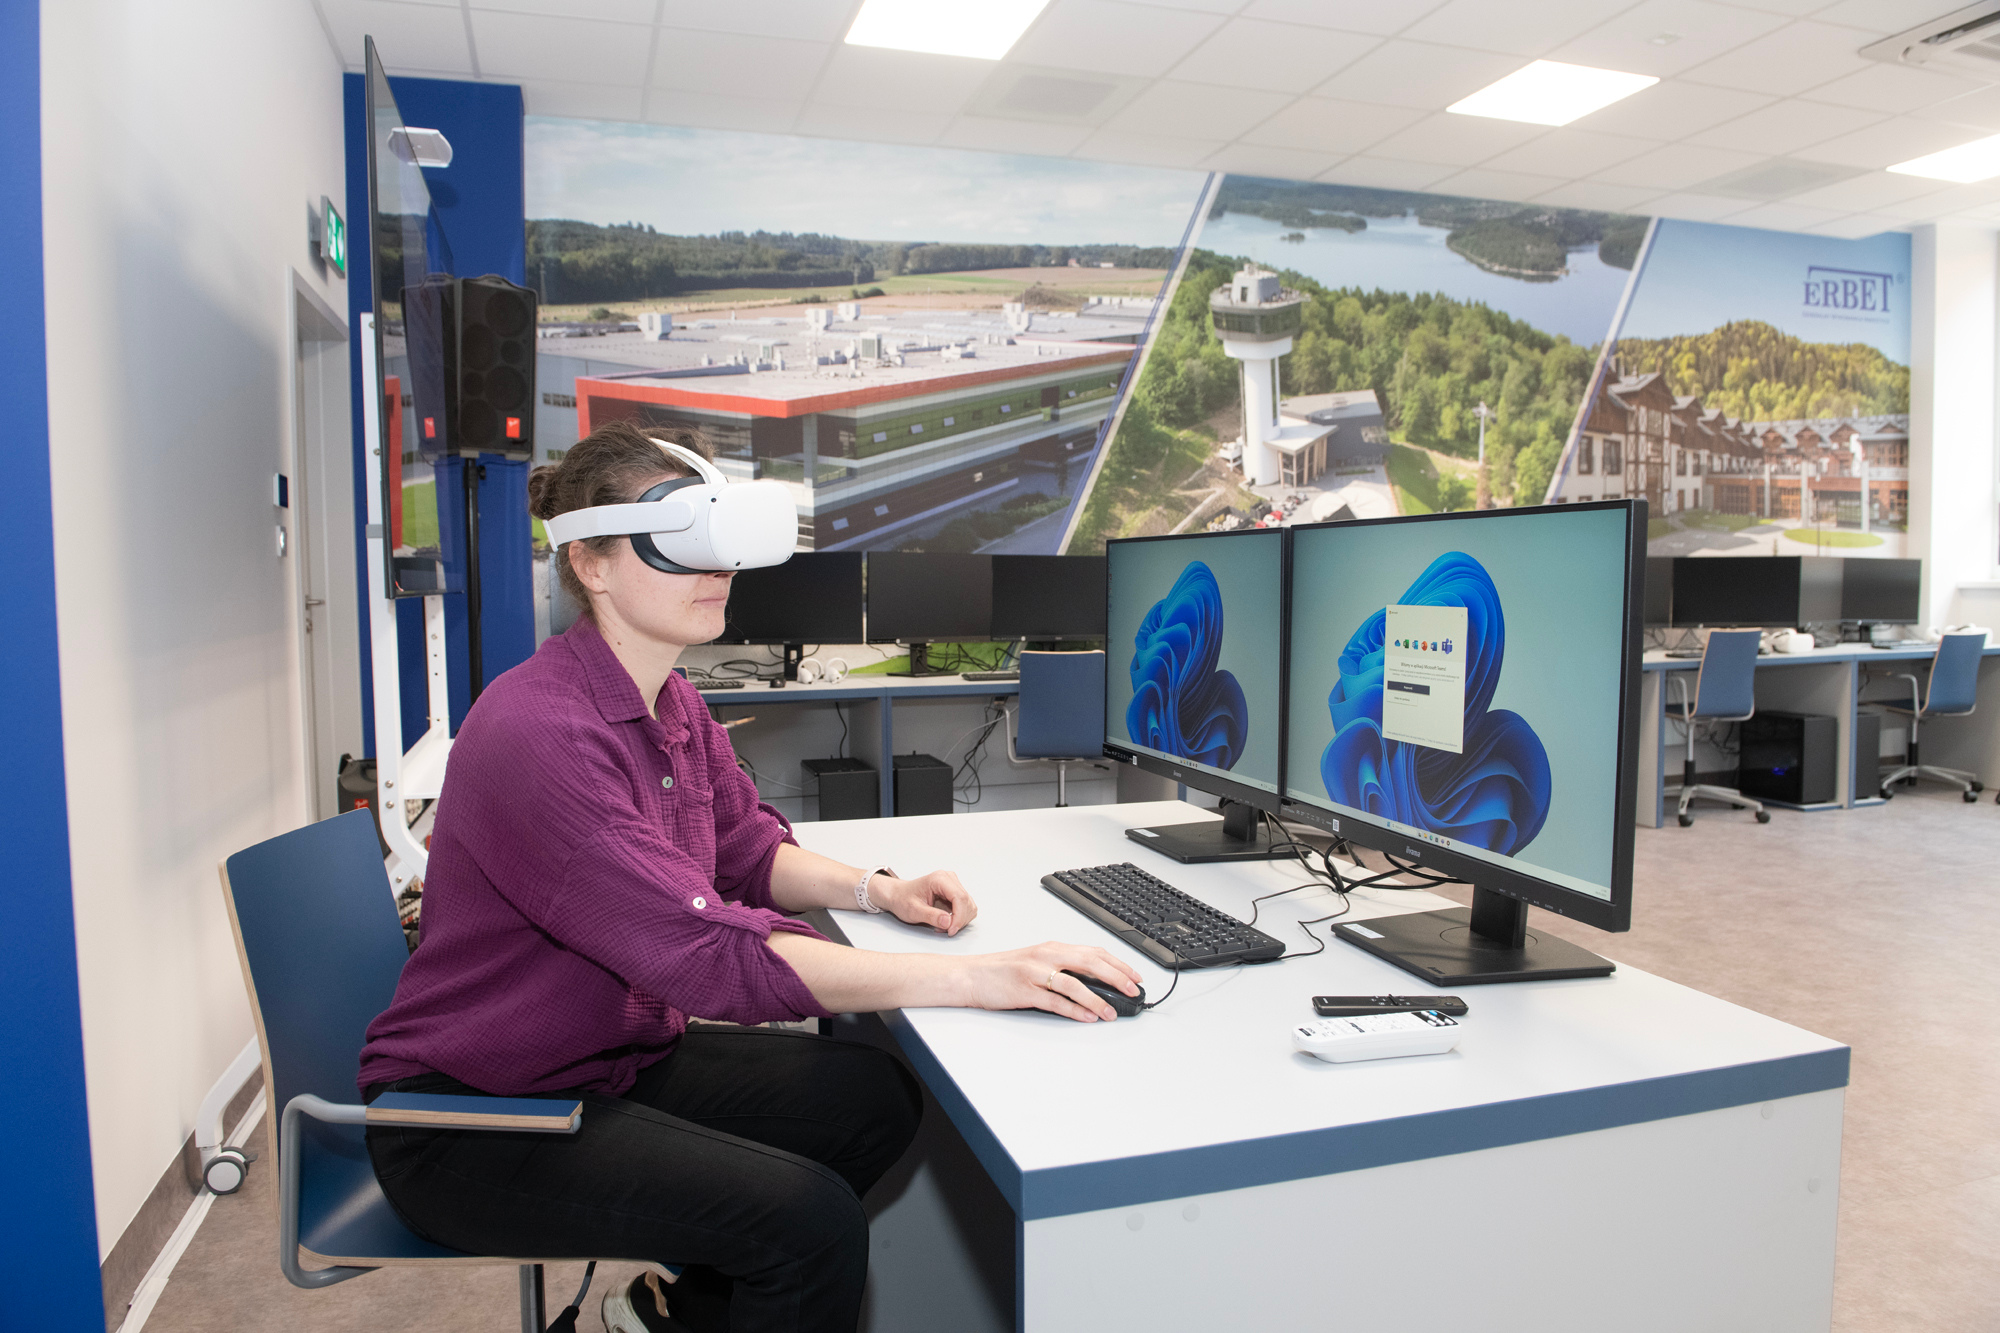 Młoda kobieta w fioletowej bluzce siedzi przy biurku z dwoma monitorami. Na oczach ma google VR. W tle widać nowocześnie wyposażoną salę komputerową.